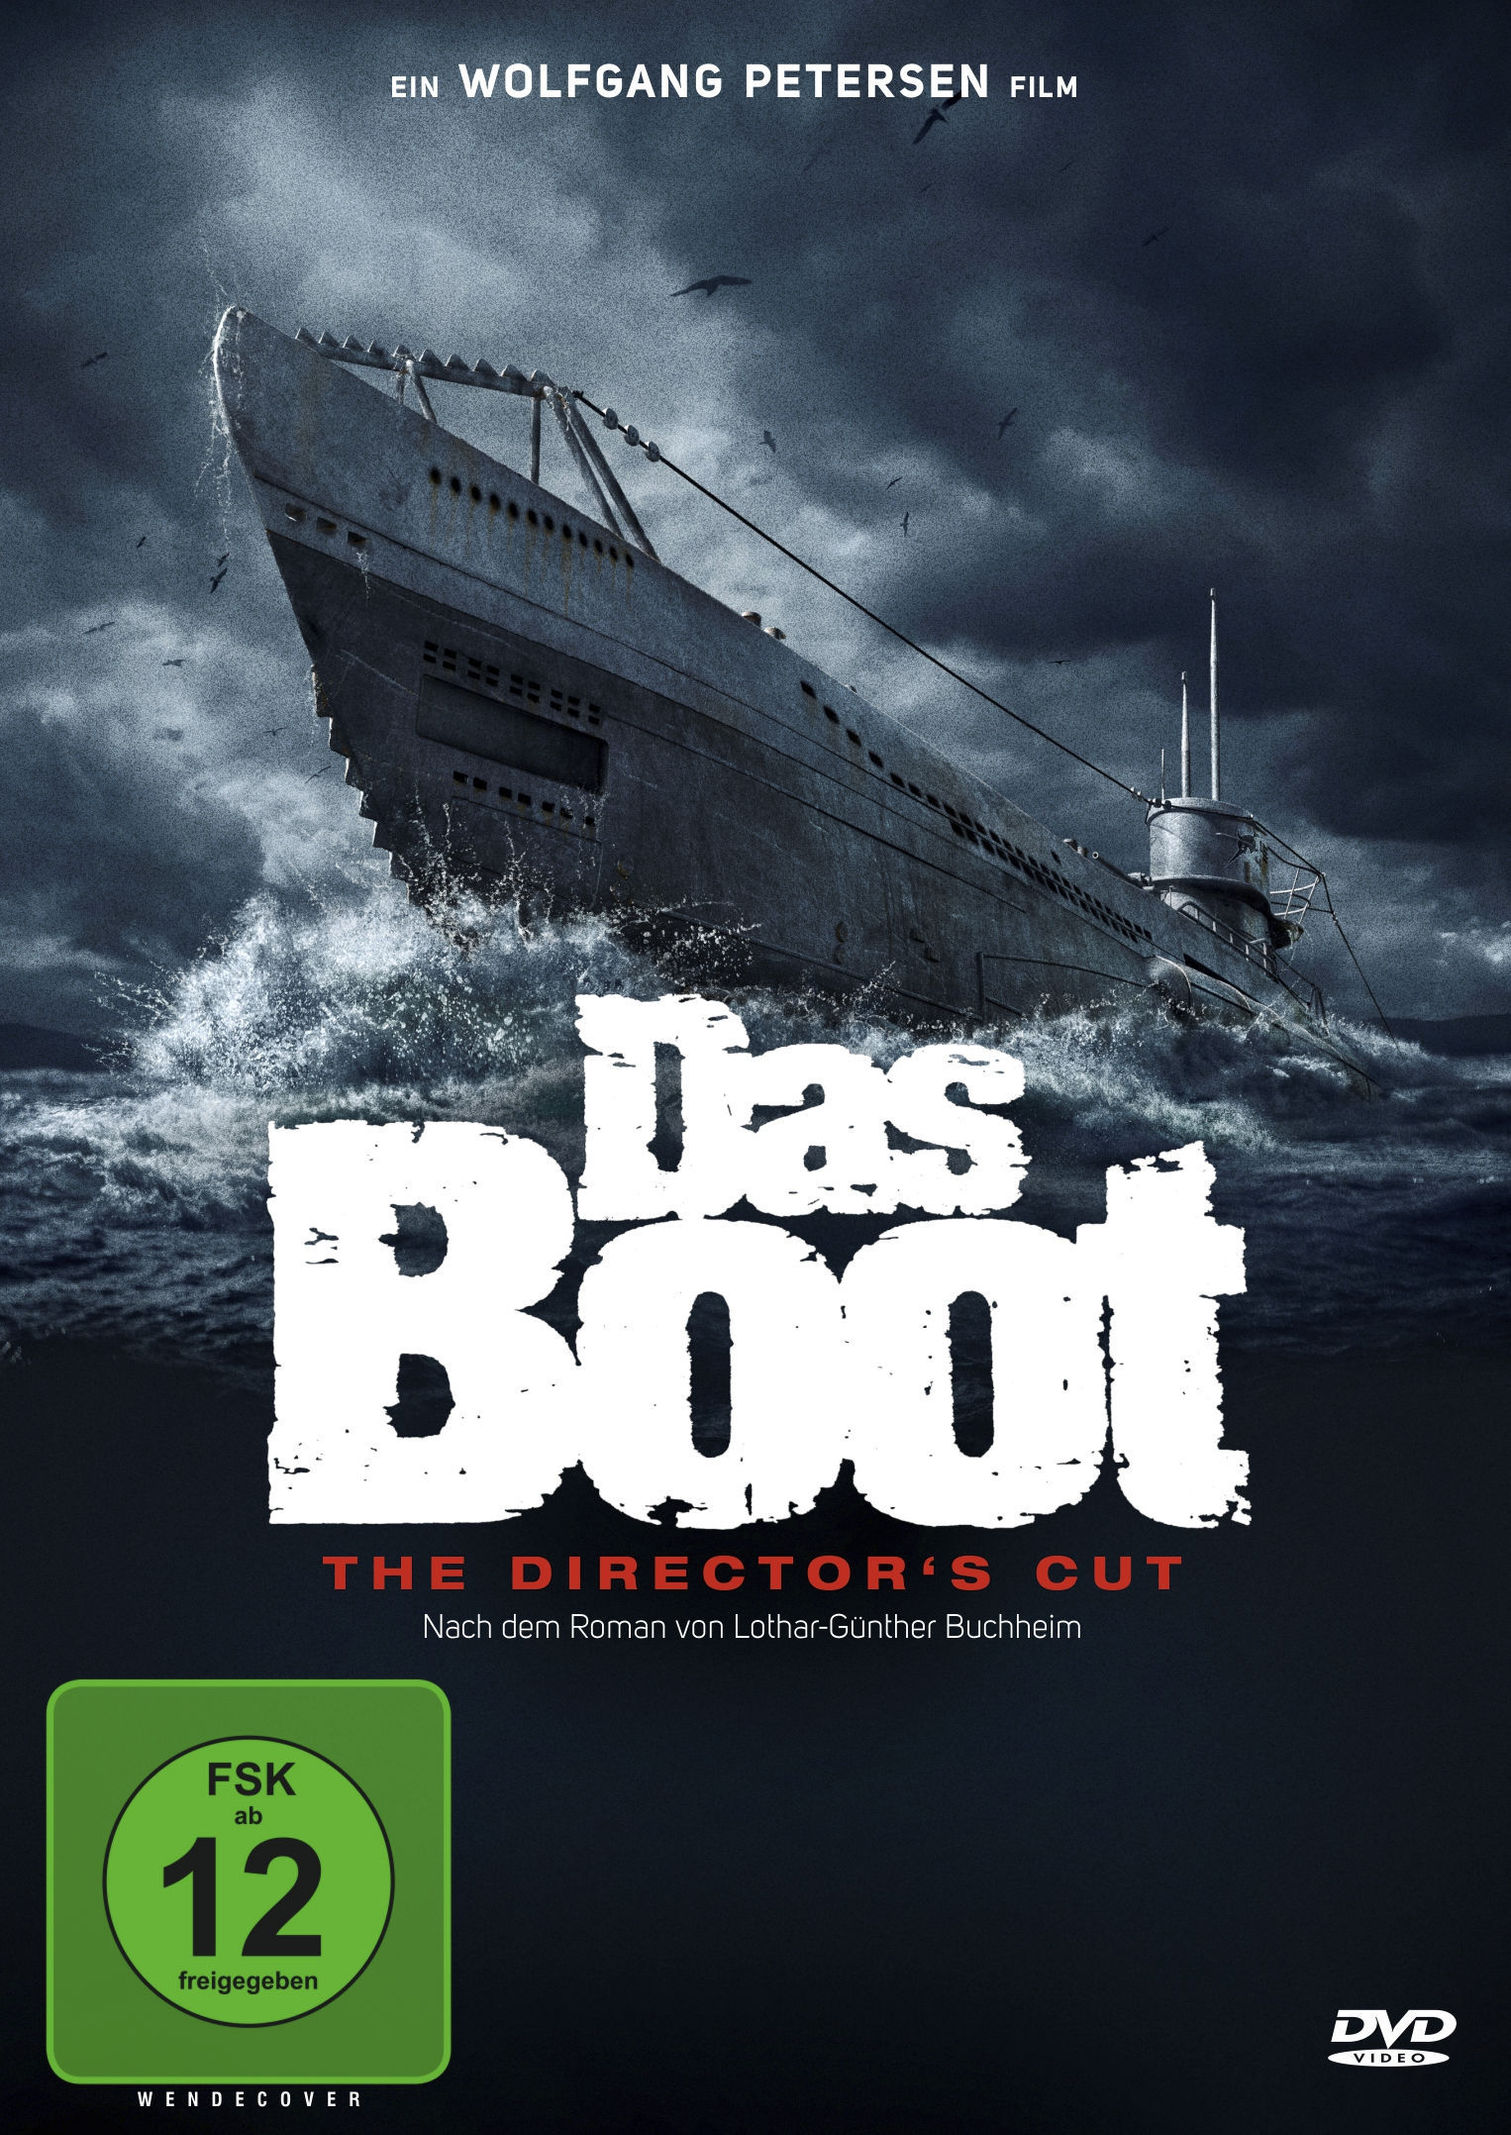 Das Boot Auf der Suche nach der Crew der U96“ (Reichmann, Hans - Peter) –  Buch neu kaufen – A02uVJUb01ZZA